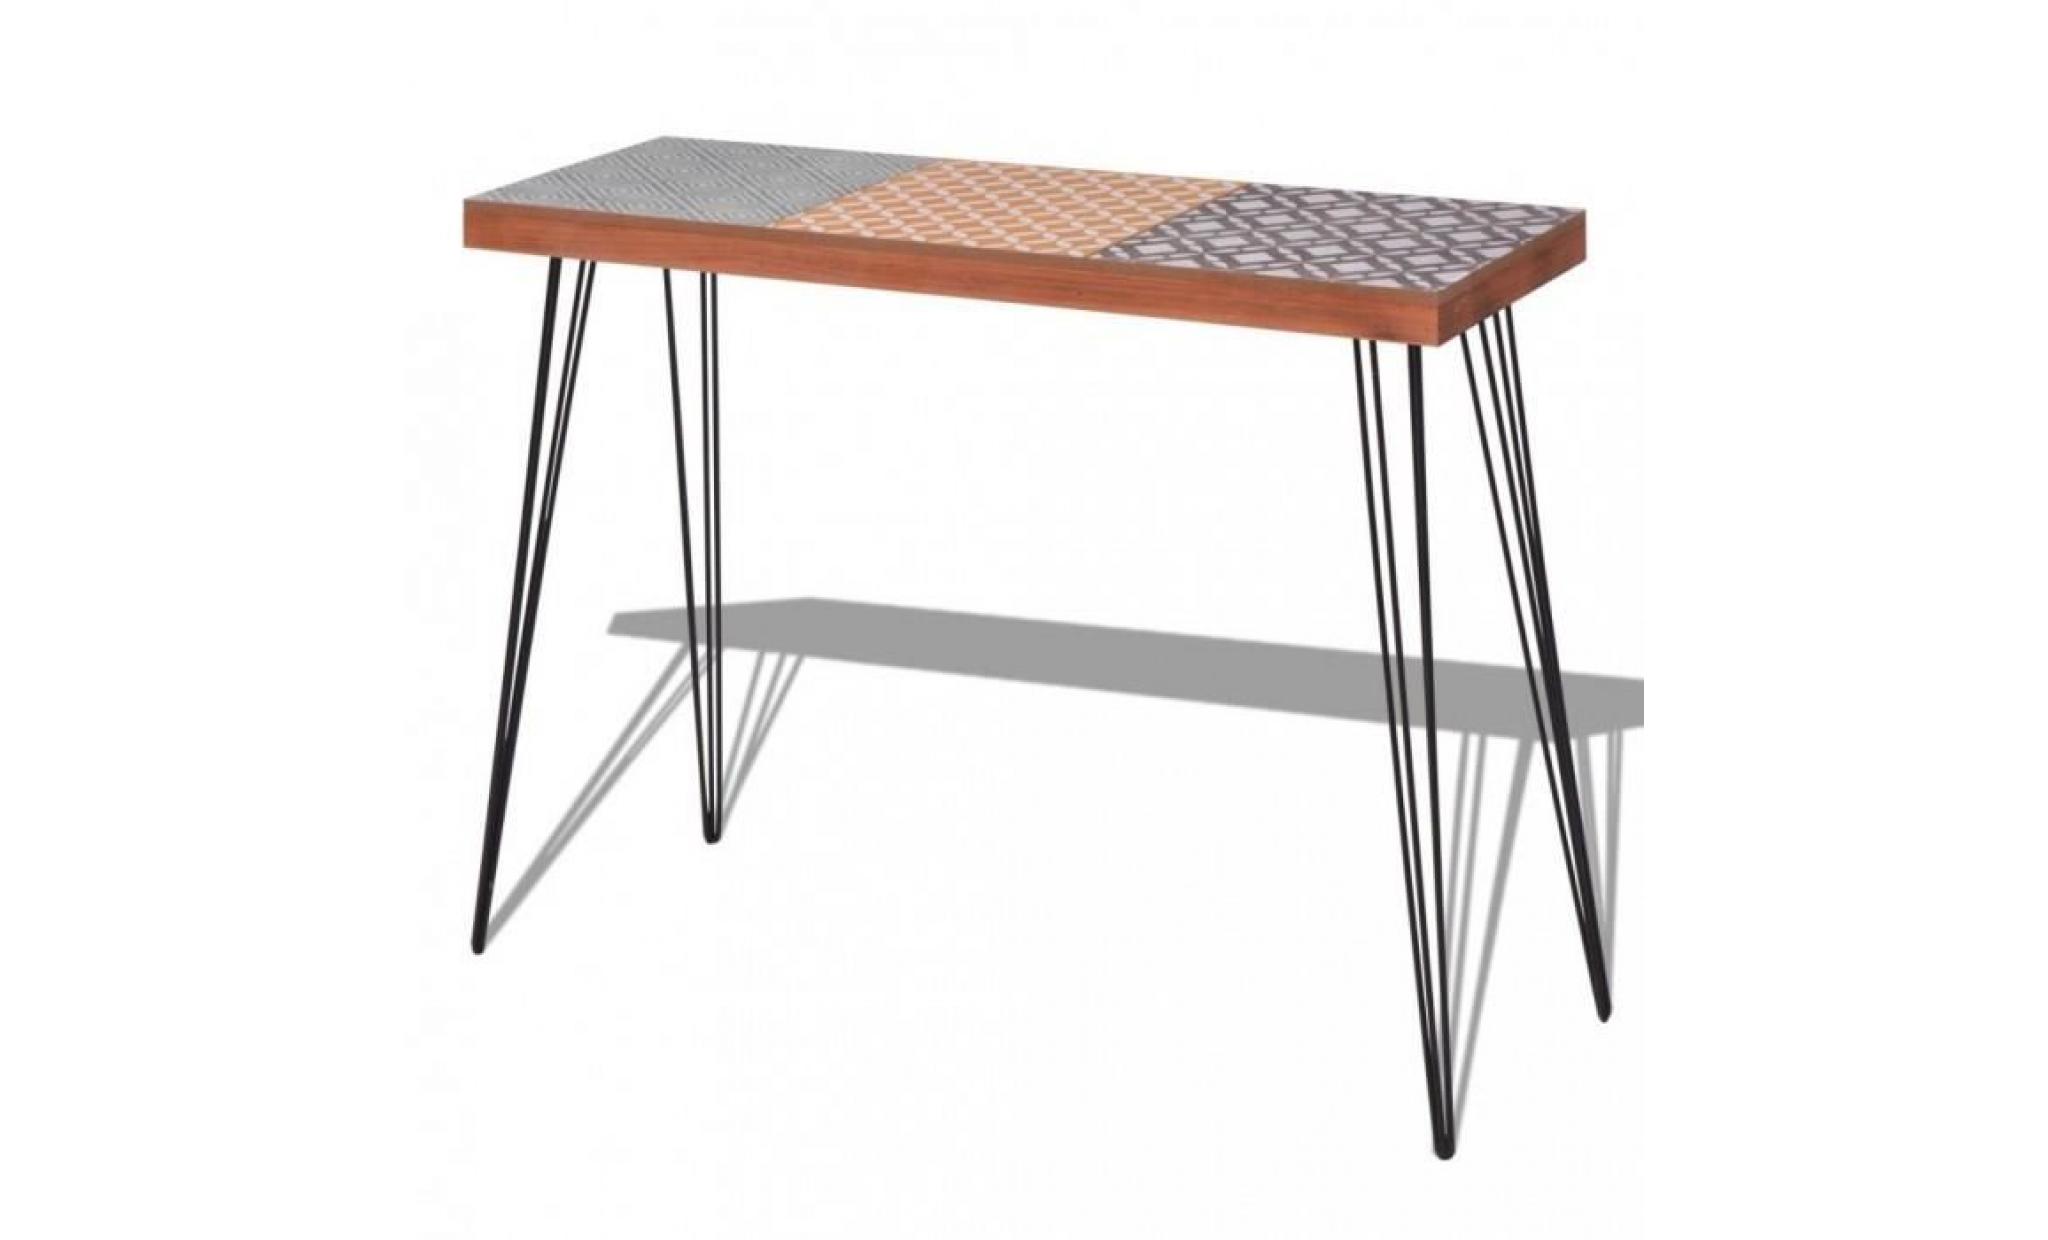 r146 couleur marron washington cette table console frappante sera le point central de